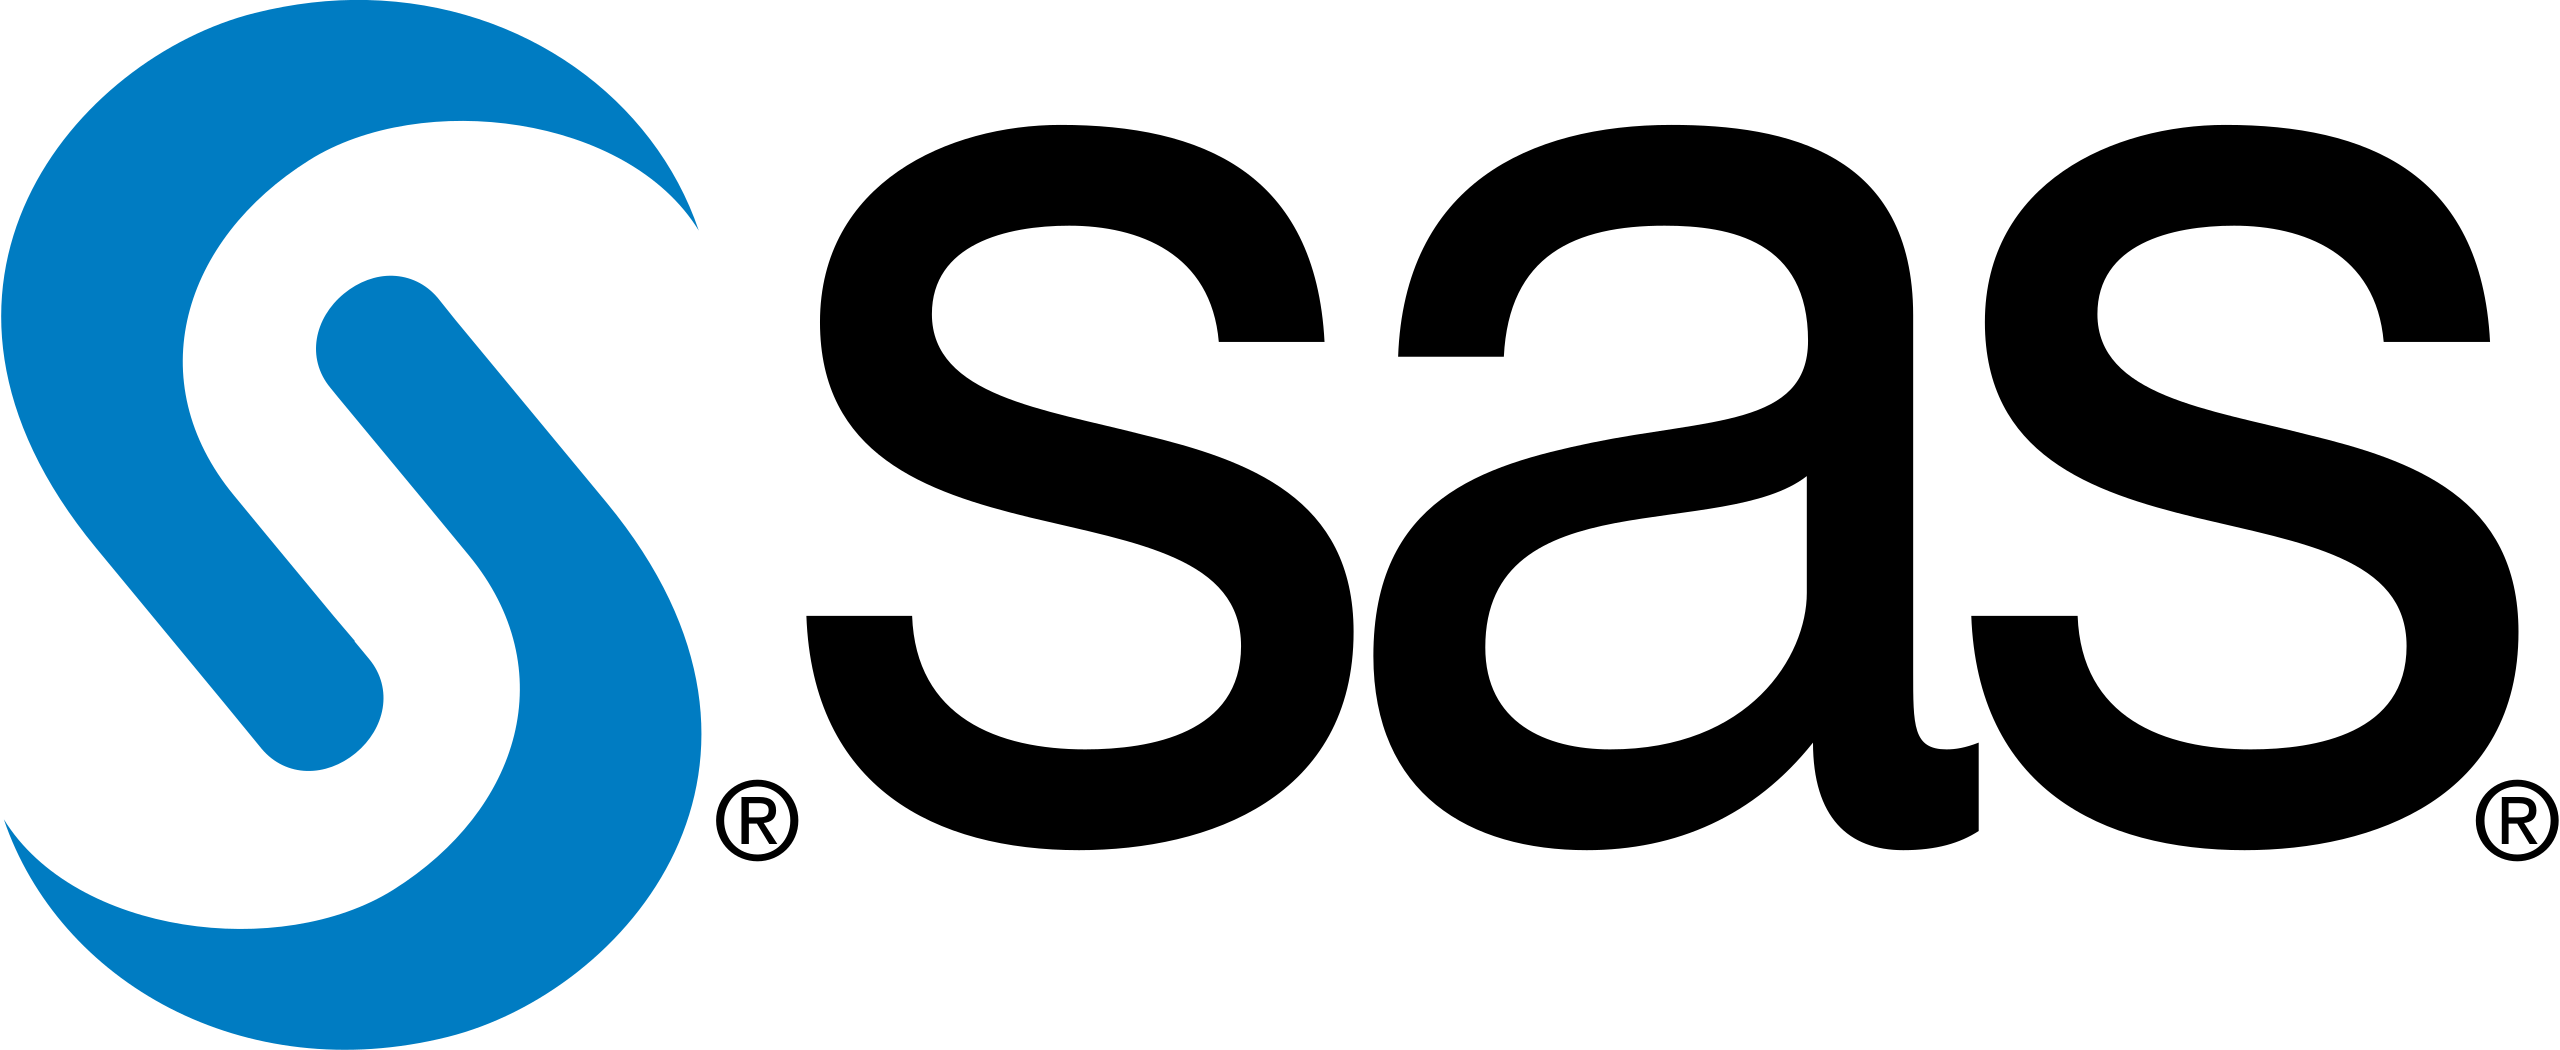 SAS_logo